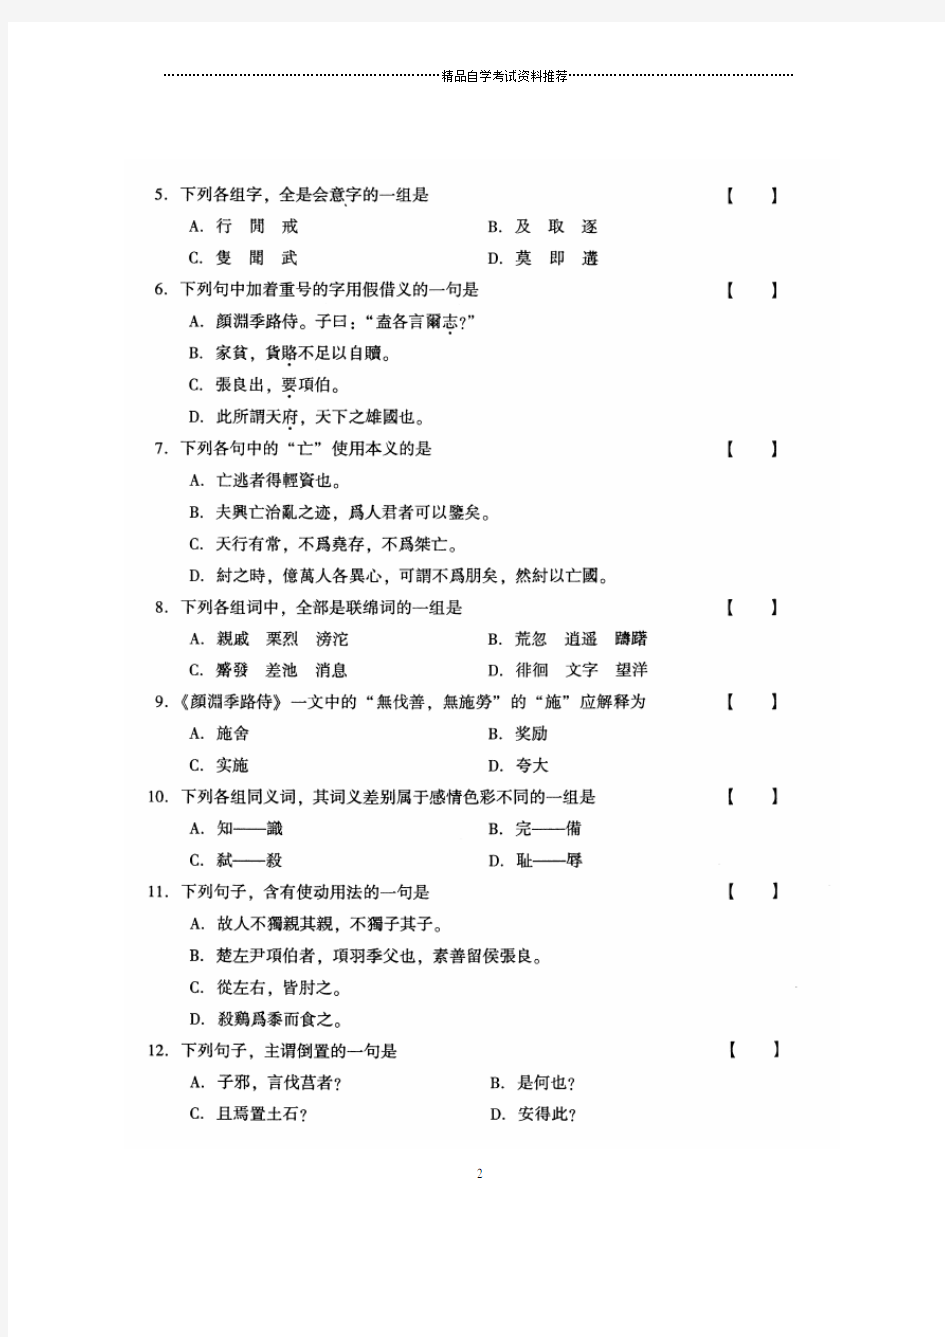 2020年1月古代汉语全国自考试卷及答案解析